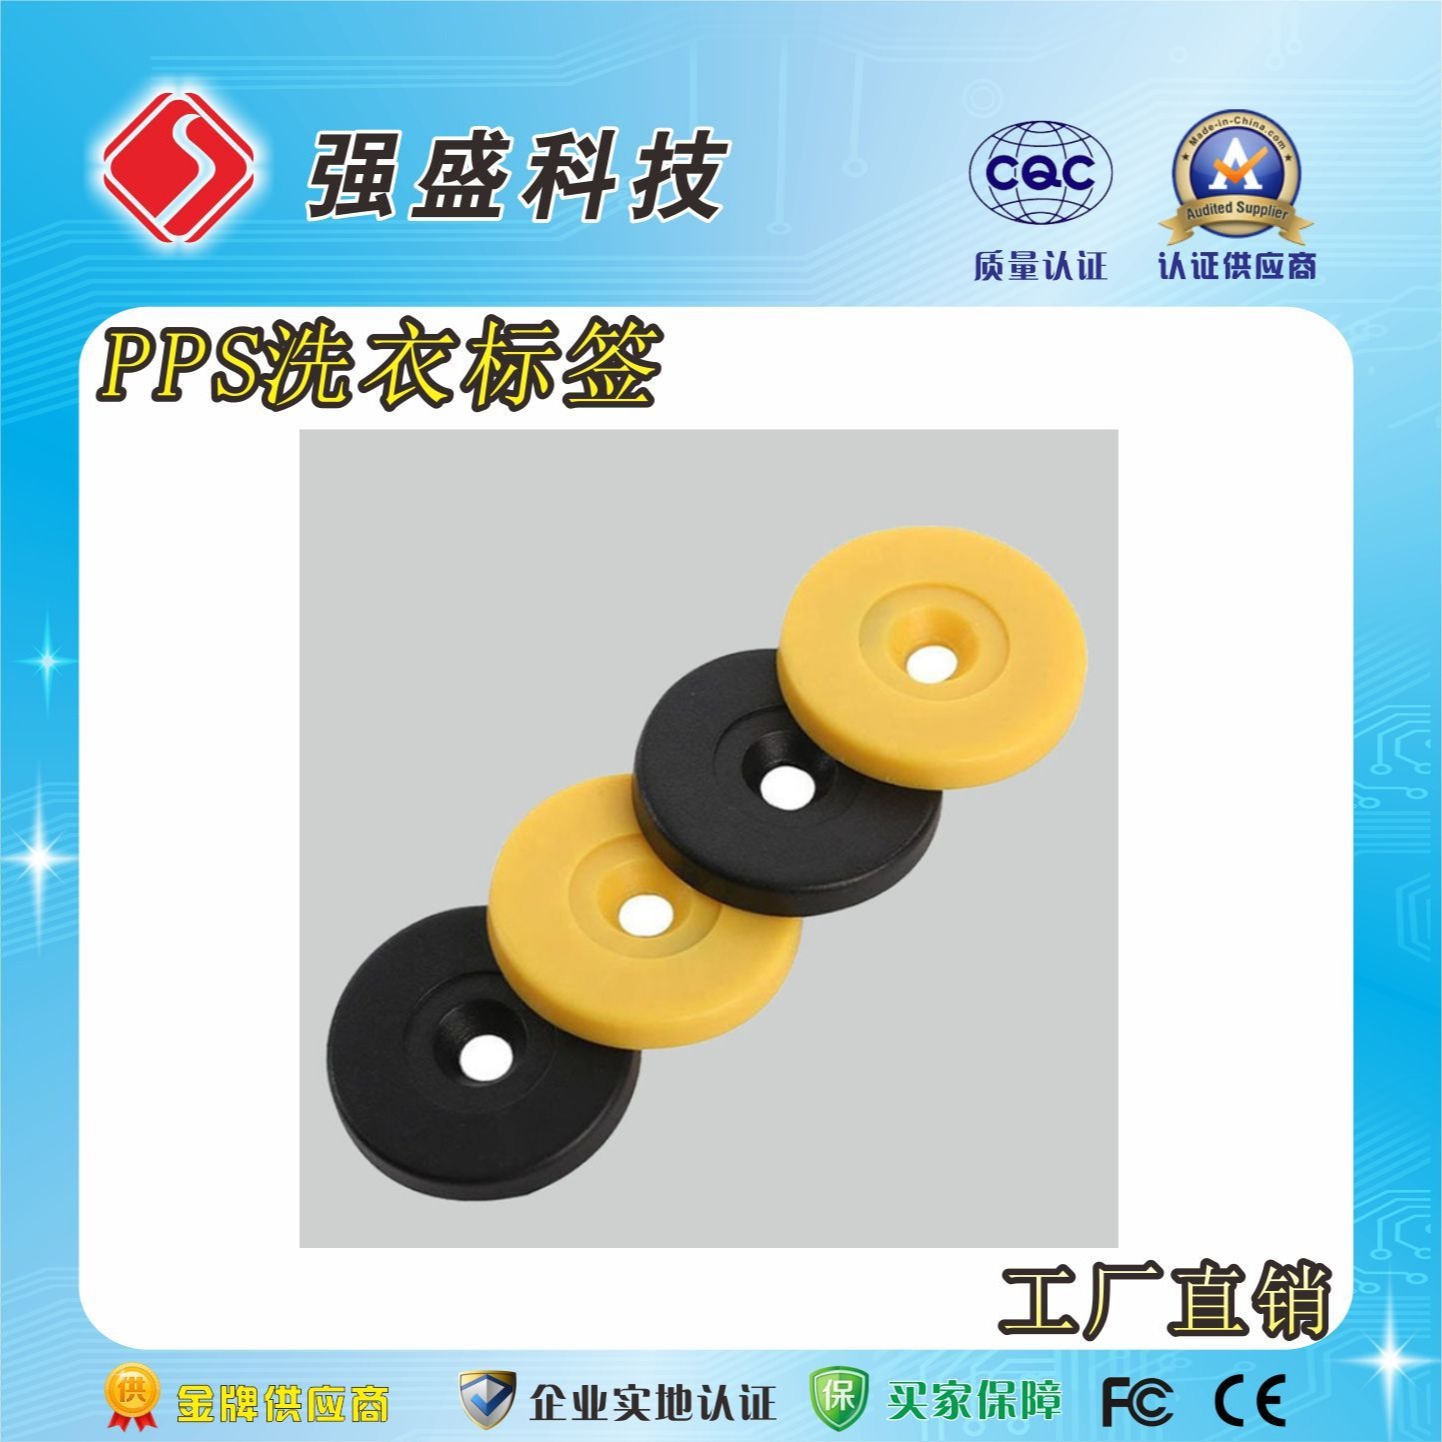 广州强盛公司RFID洗衣标签厂家、RFID洗衣扭扣价格——洗衣标签的功能图片